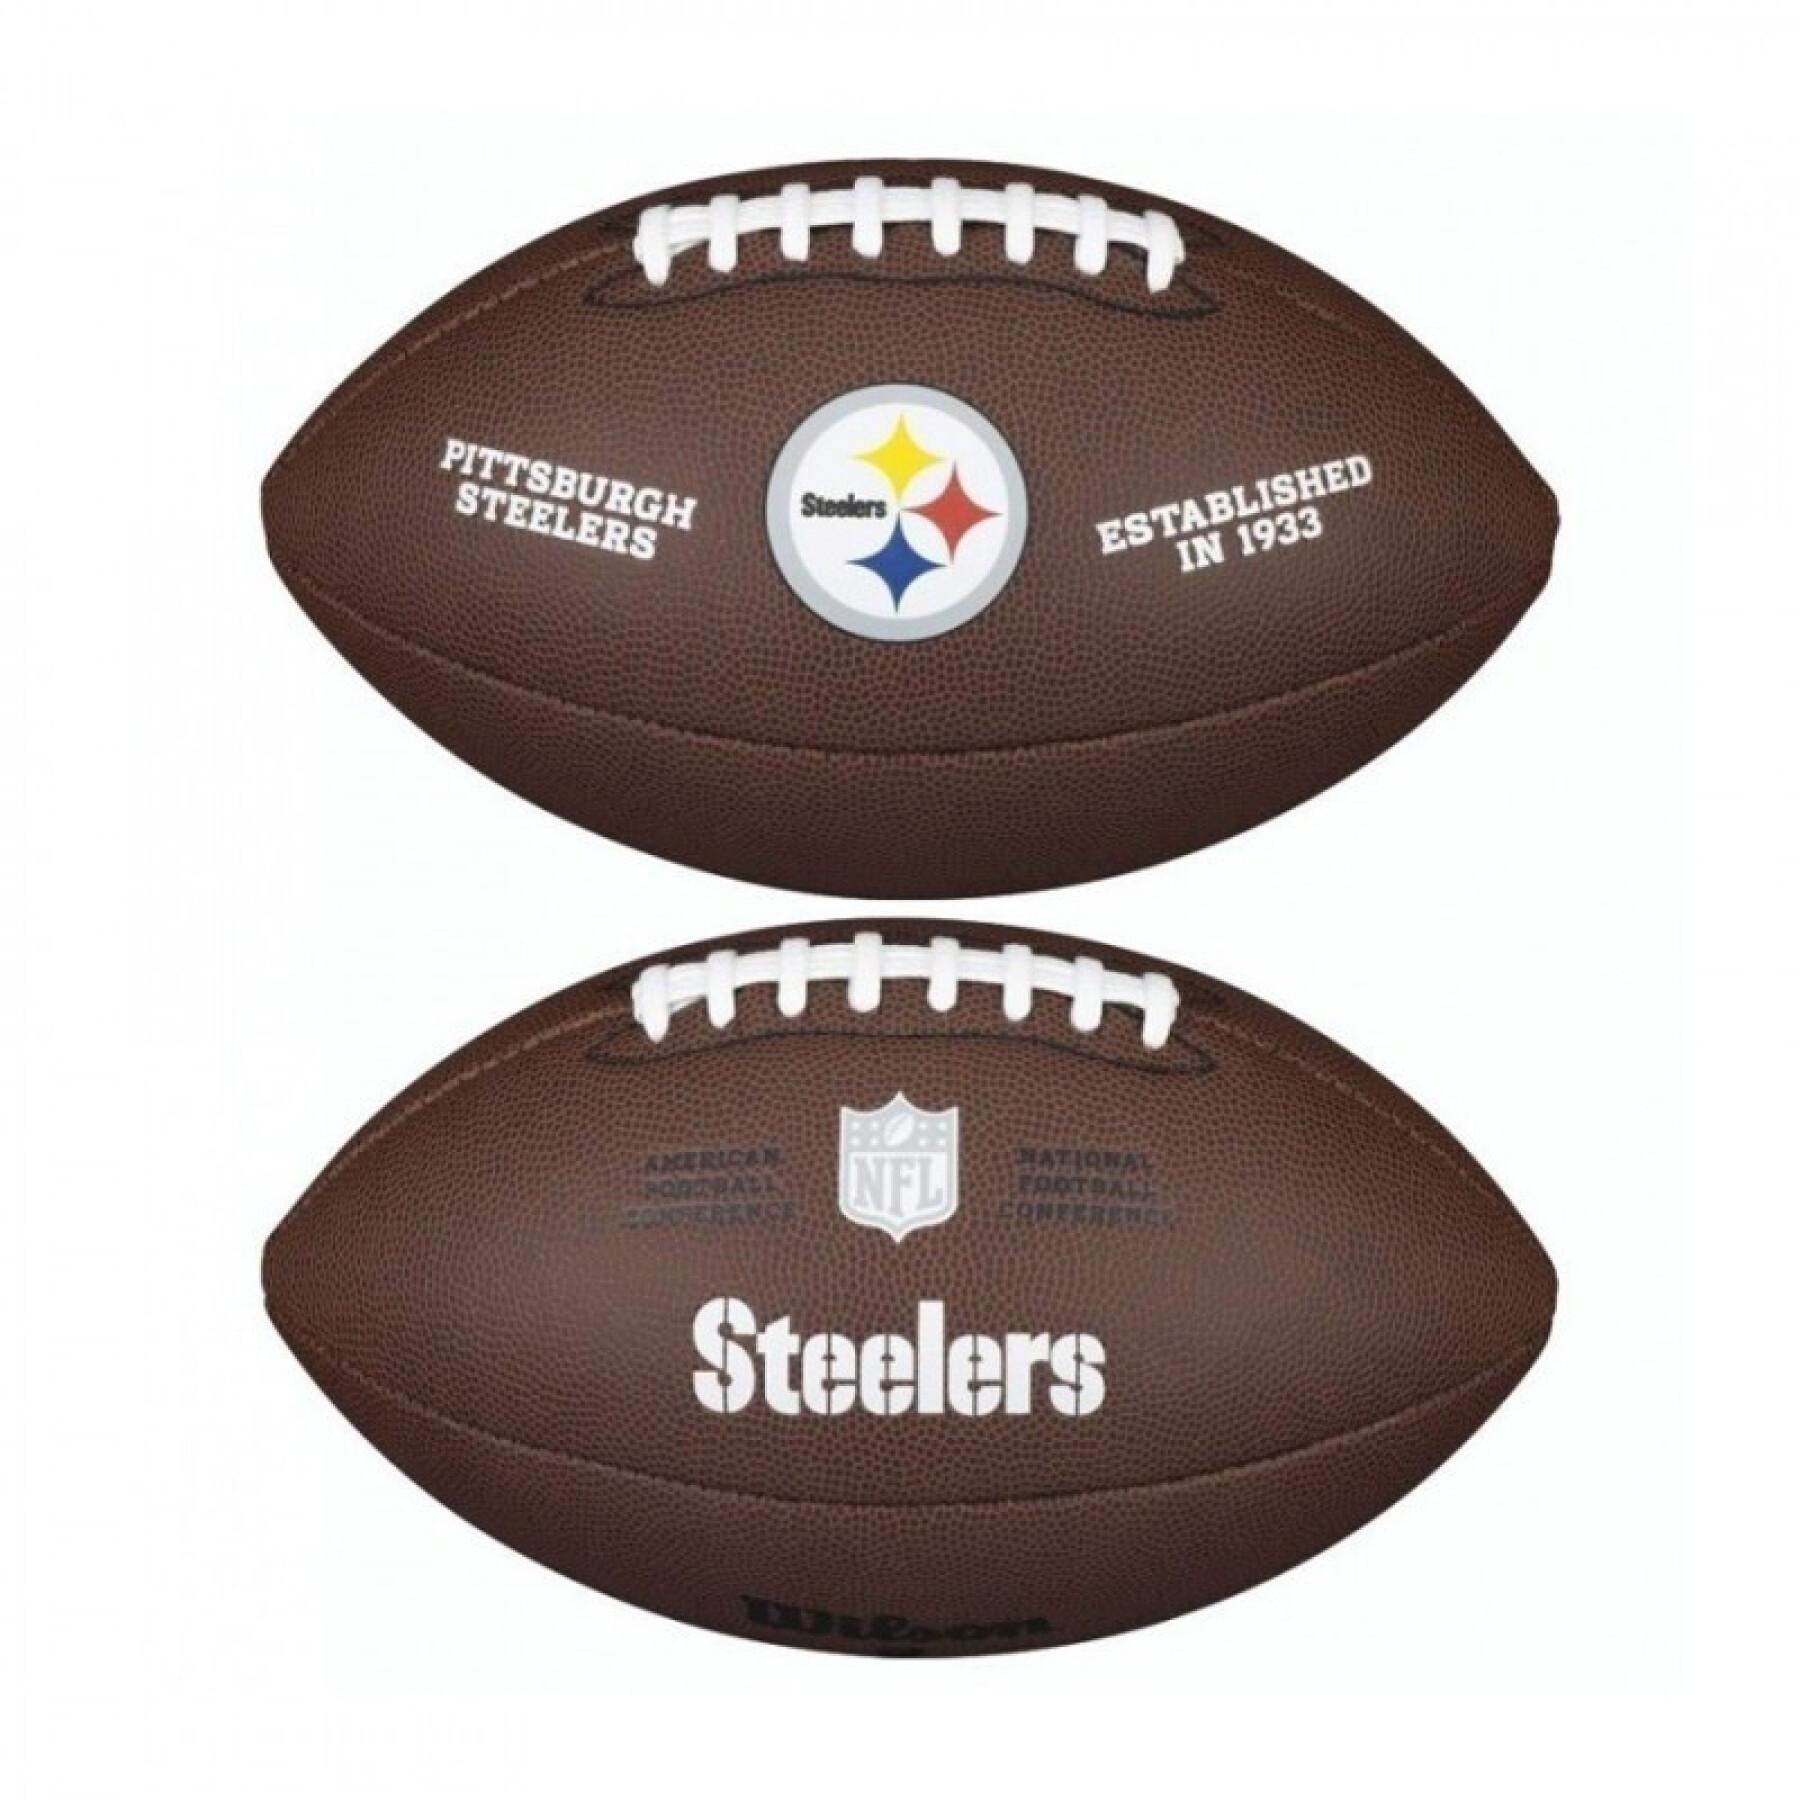 Wilson Steelers NFL Licensed